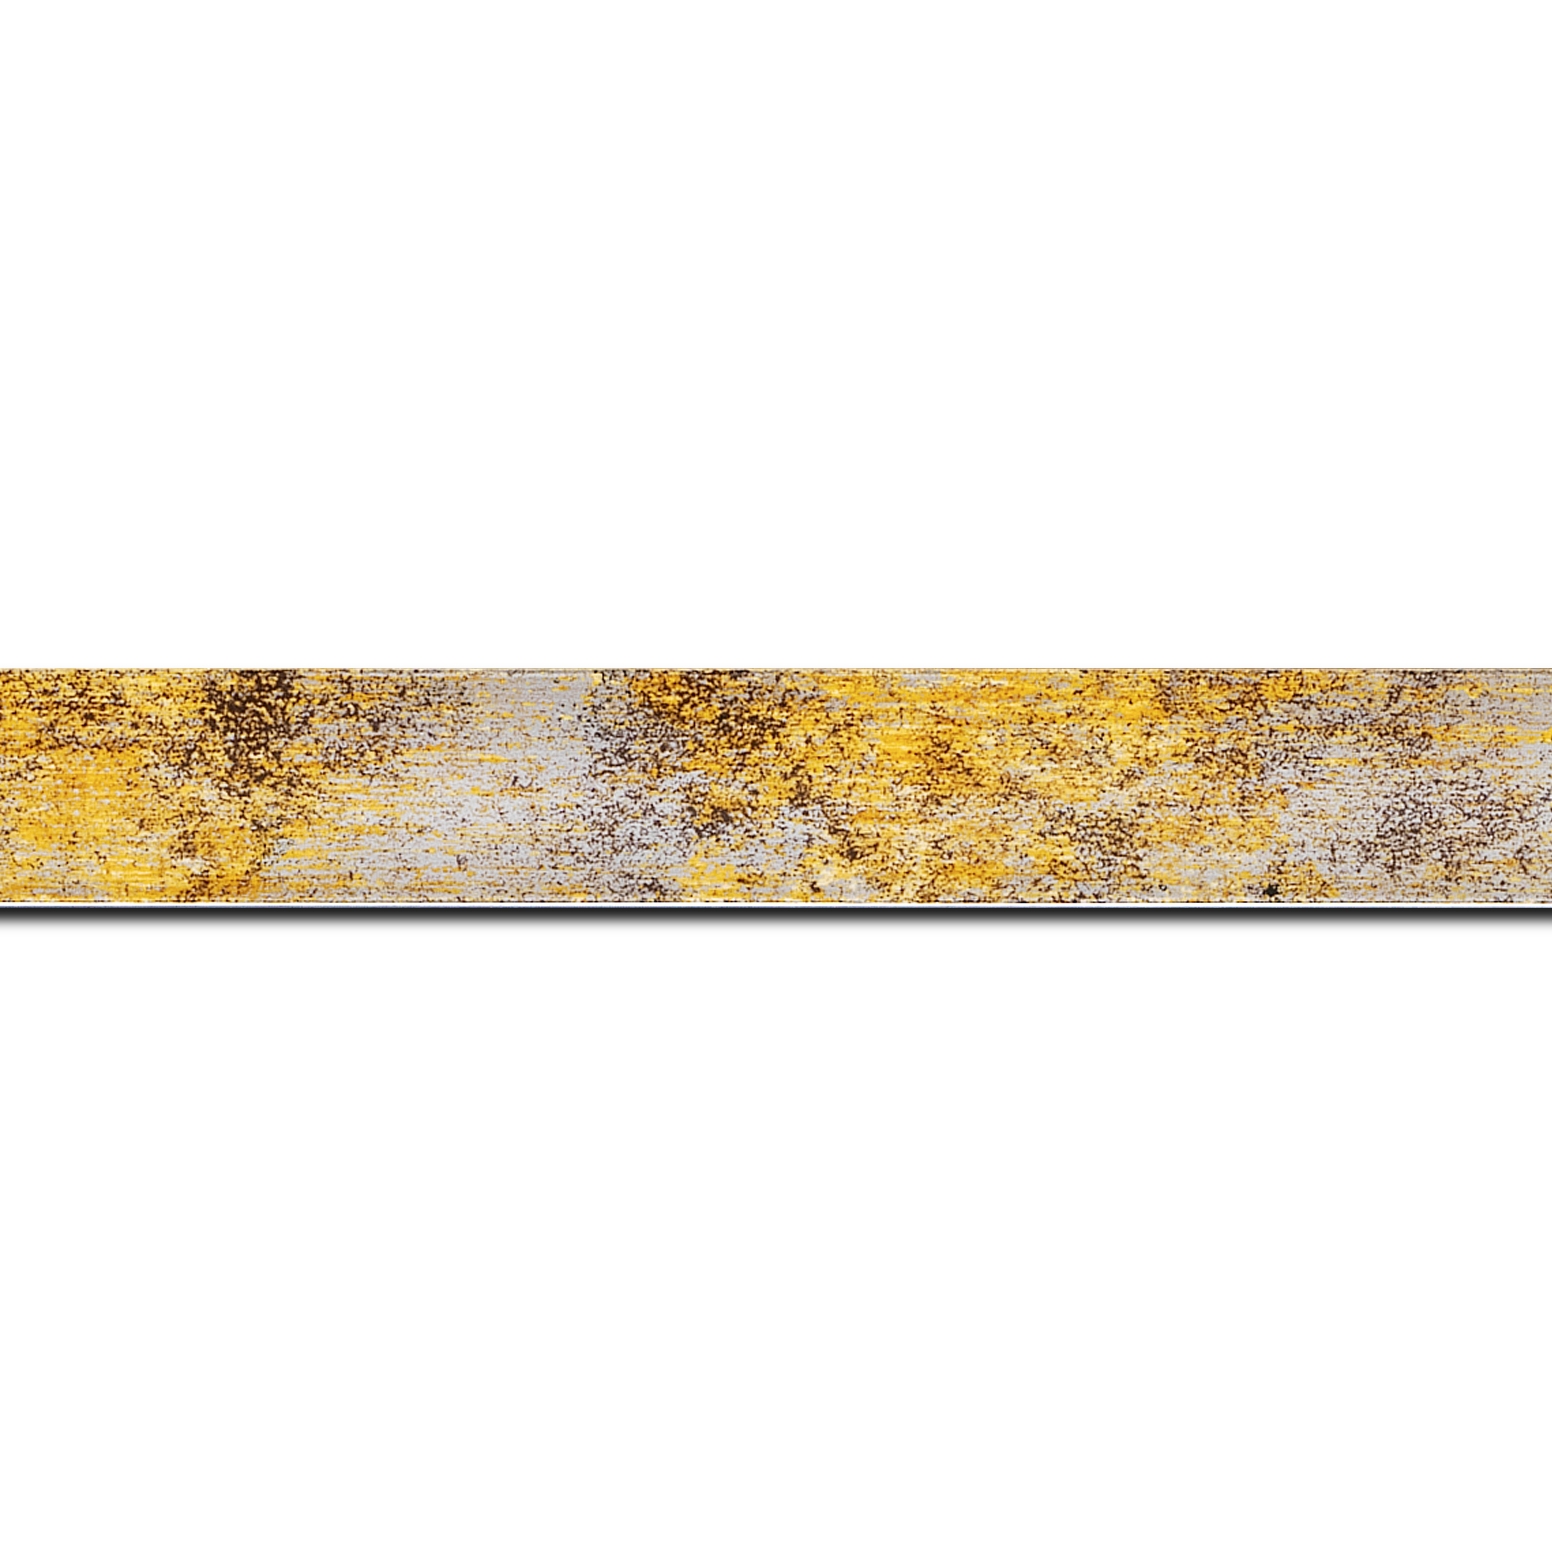 Baguette longueur 1.40m bois profil concave largeur 2.4cm de couleur jaune moucheté fond argent